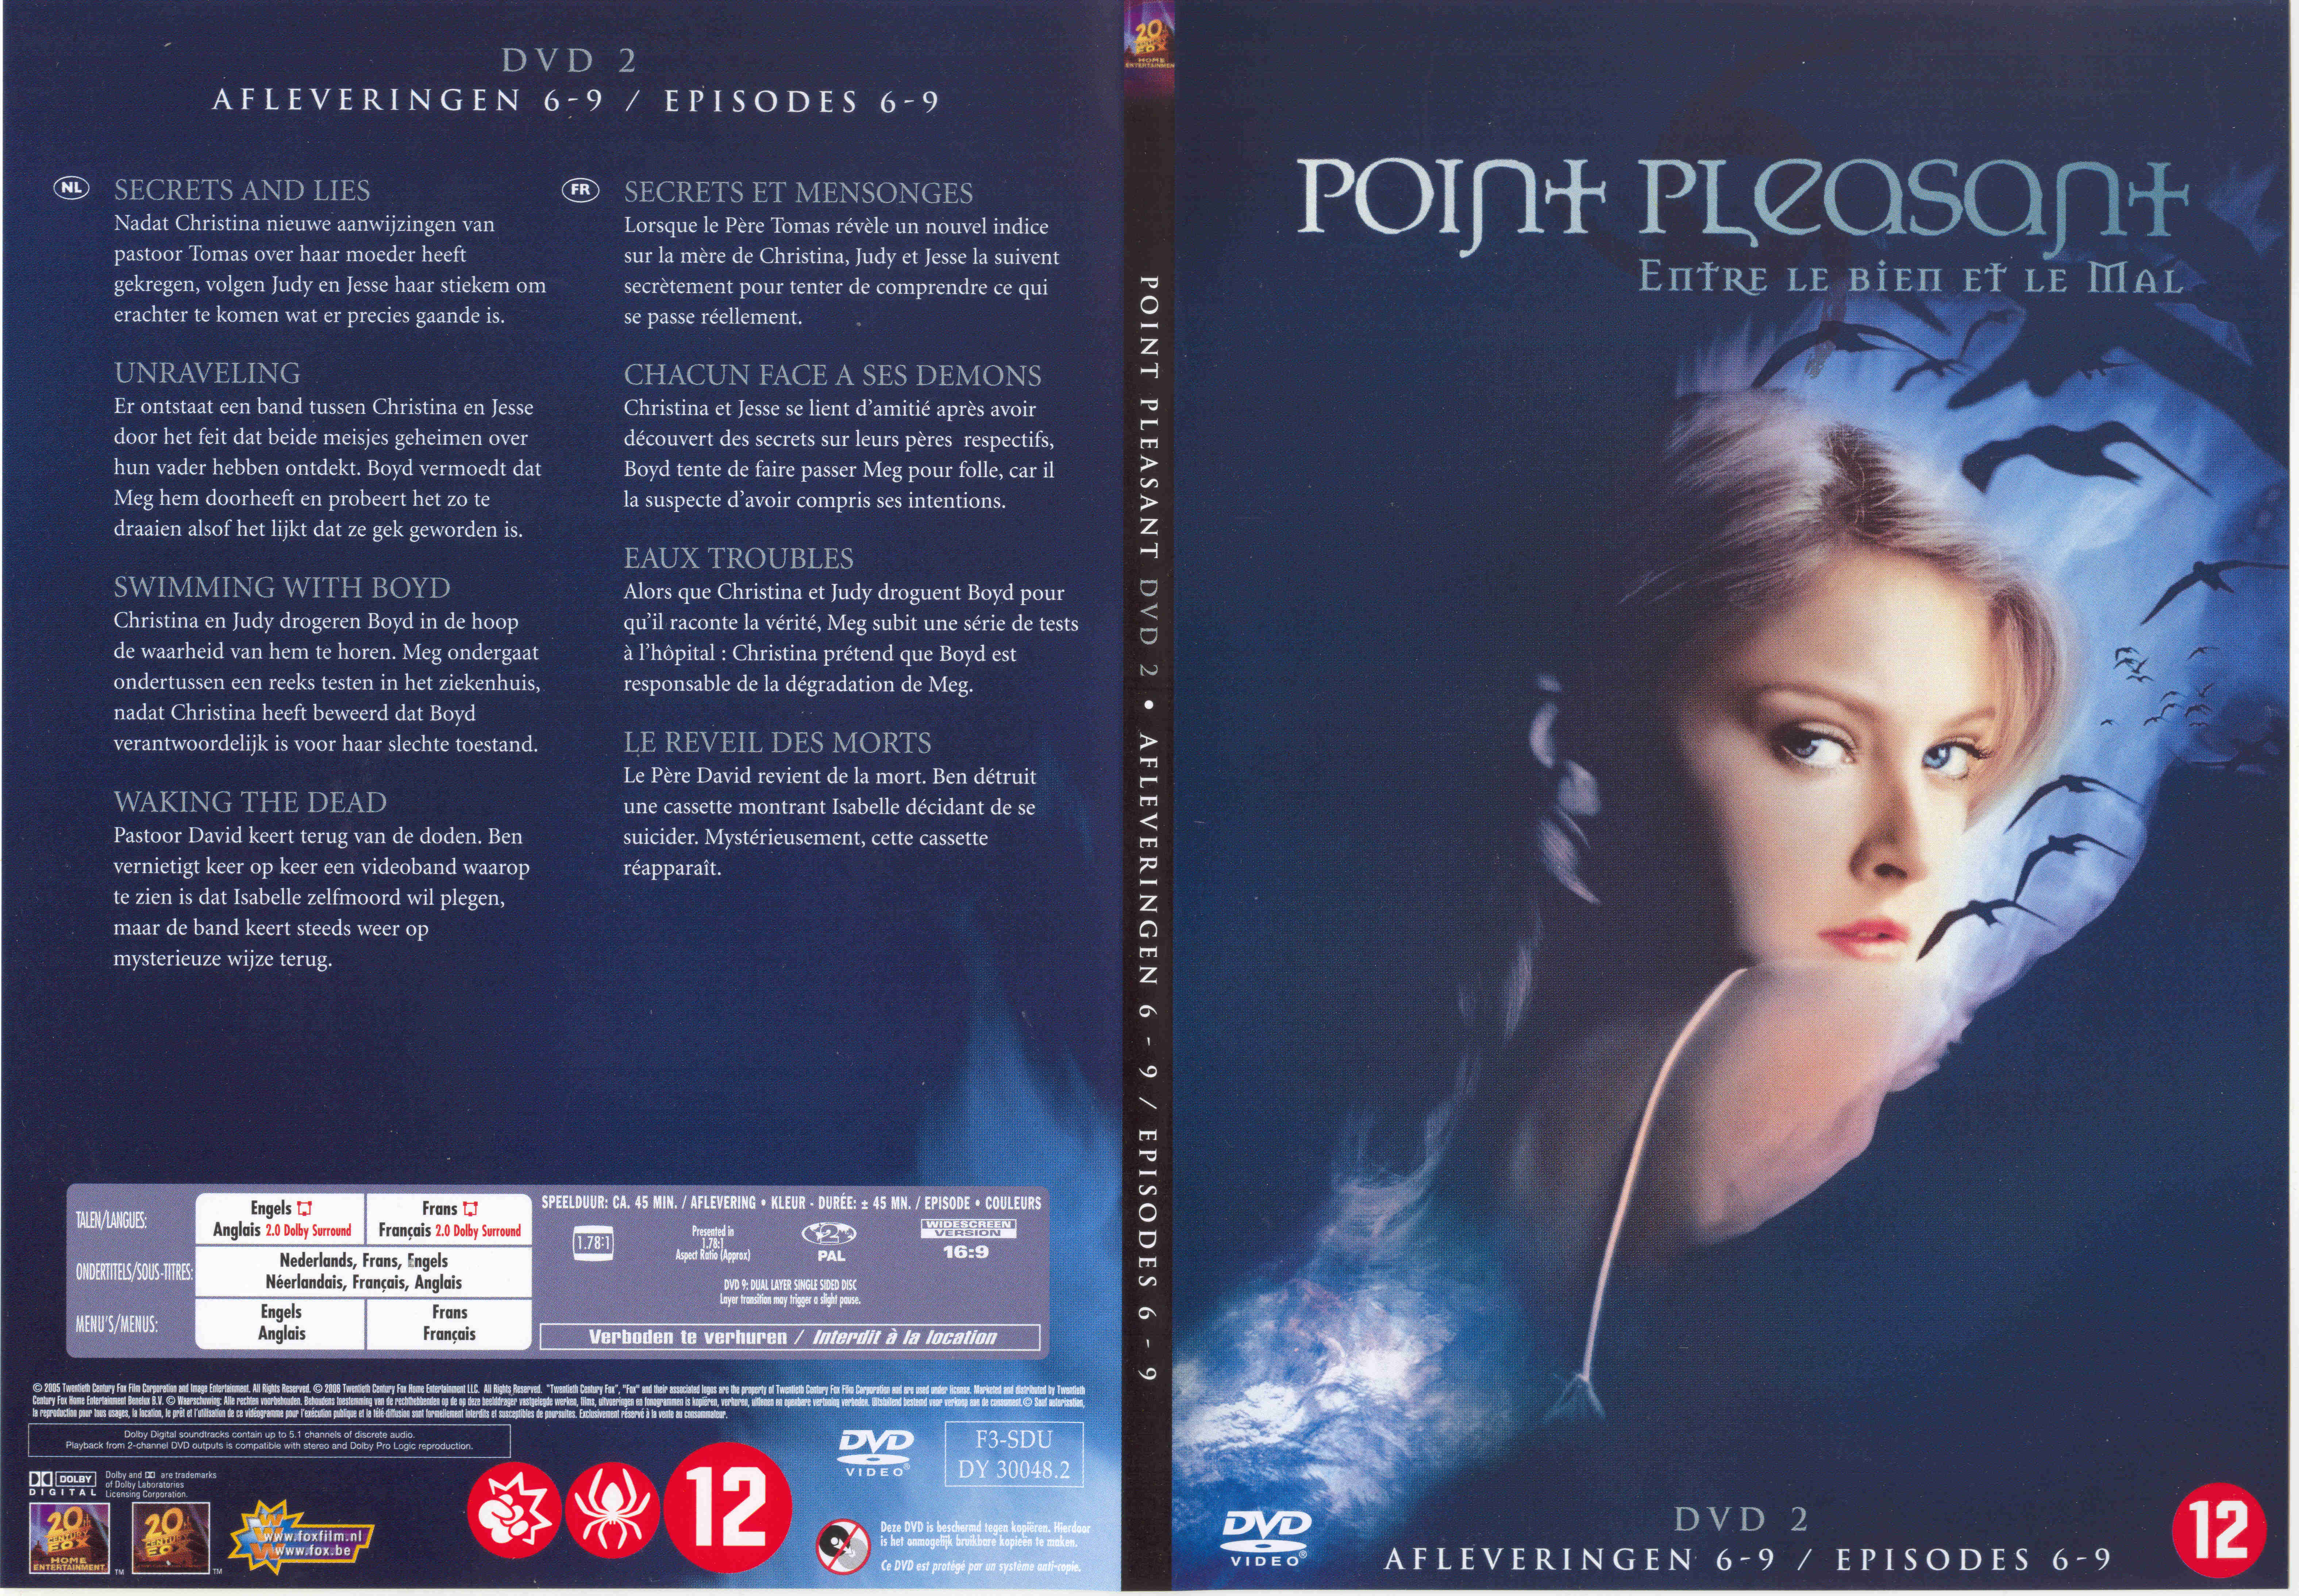 Jaquette DVD Point pleasant vol 2